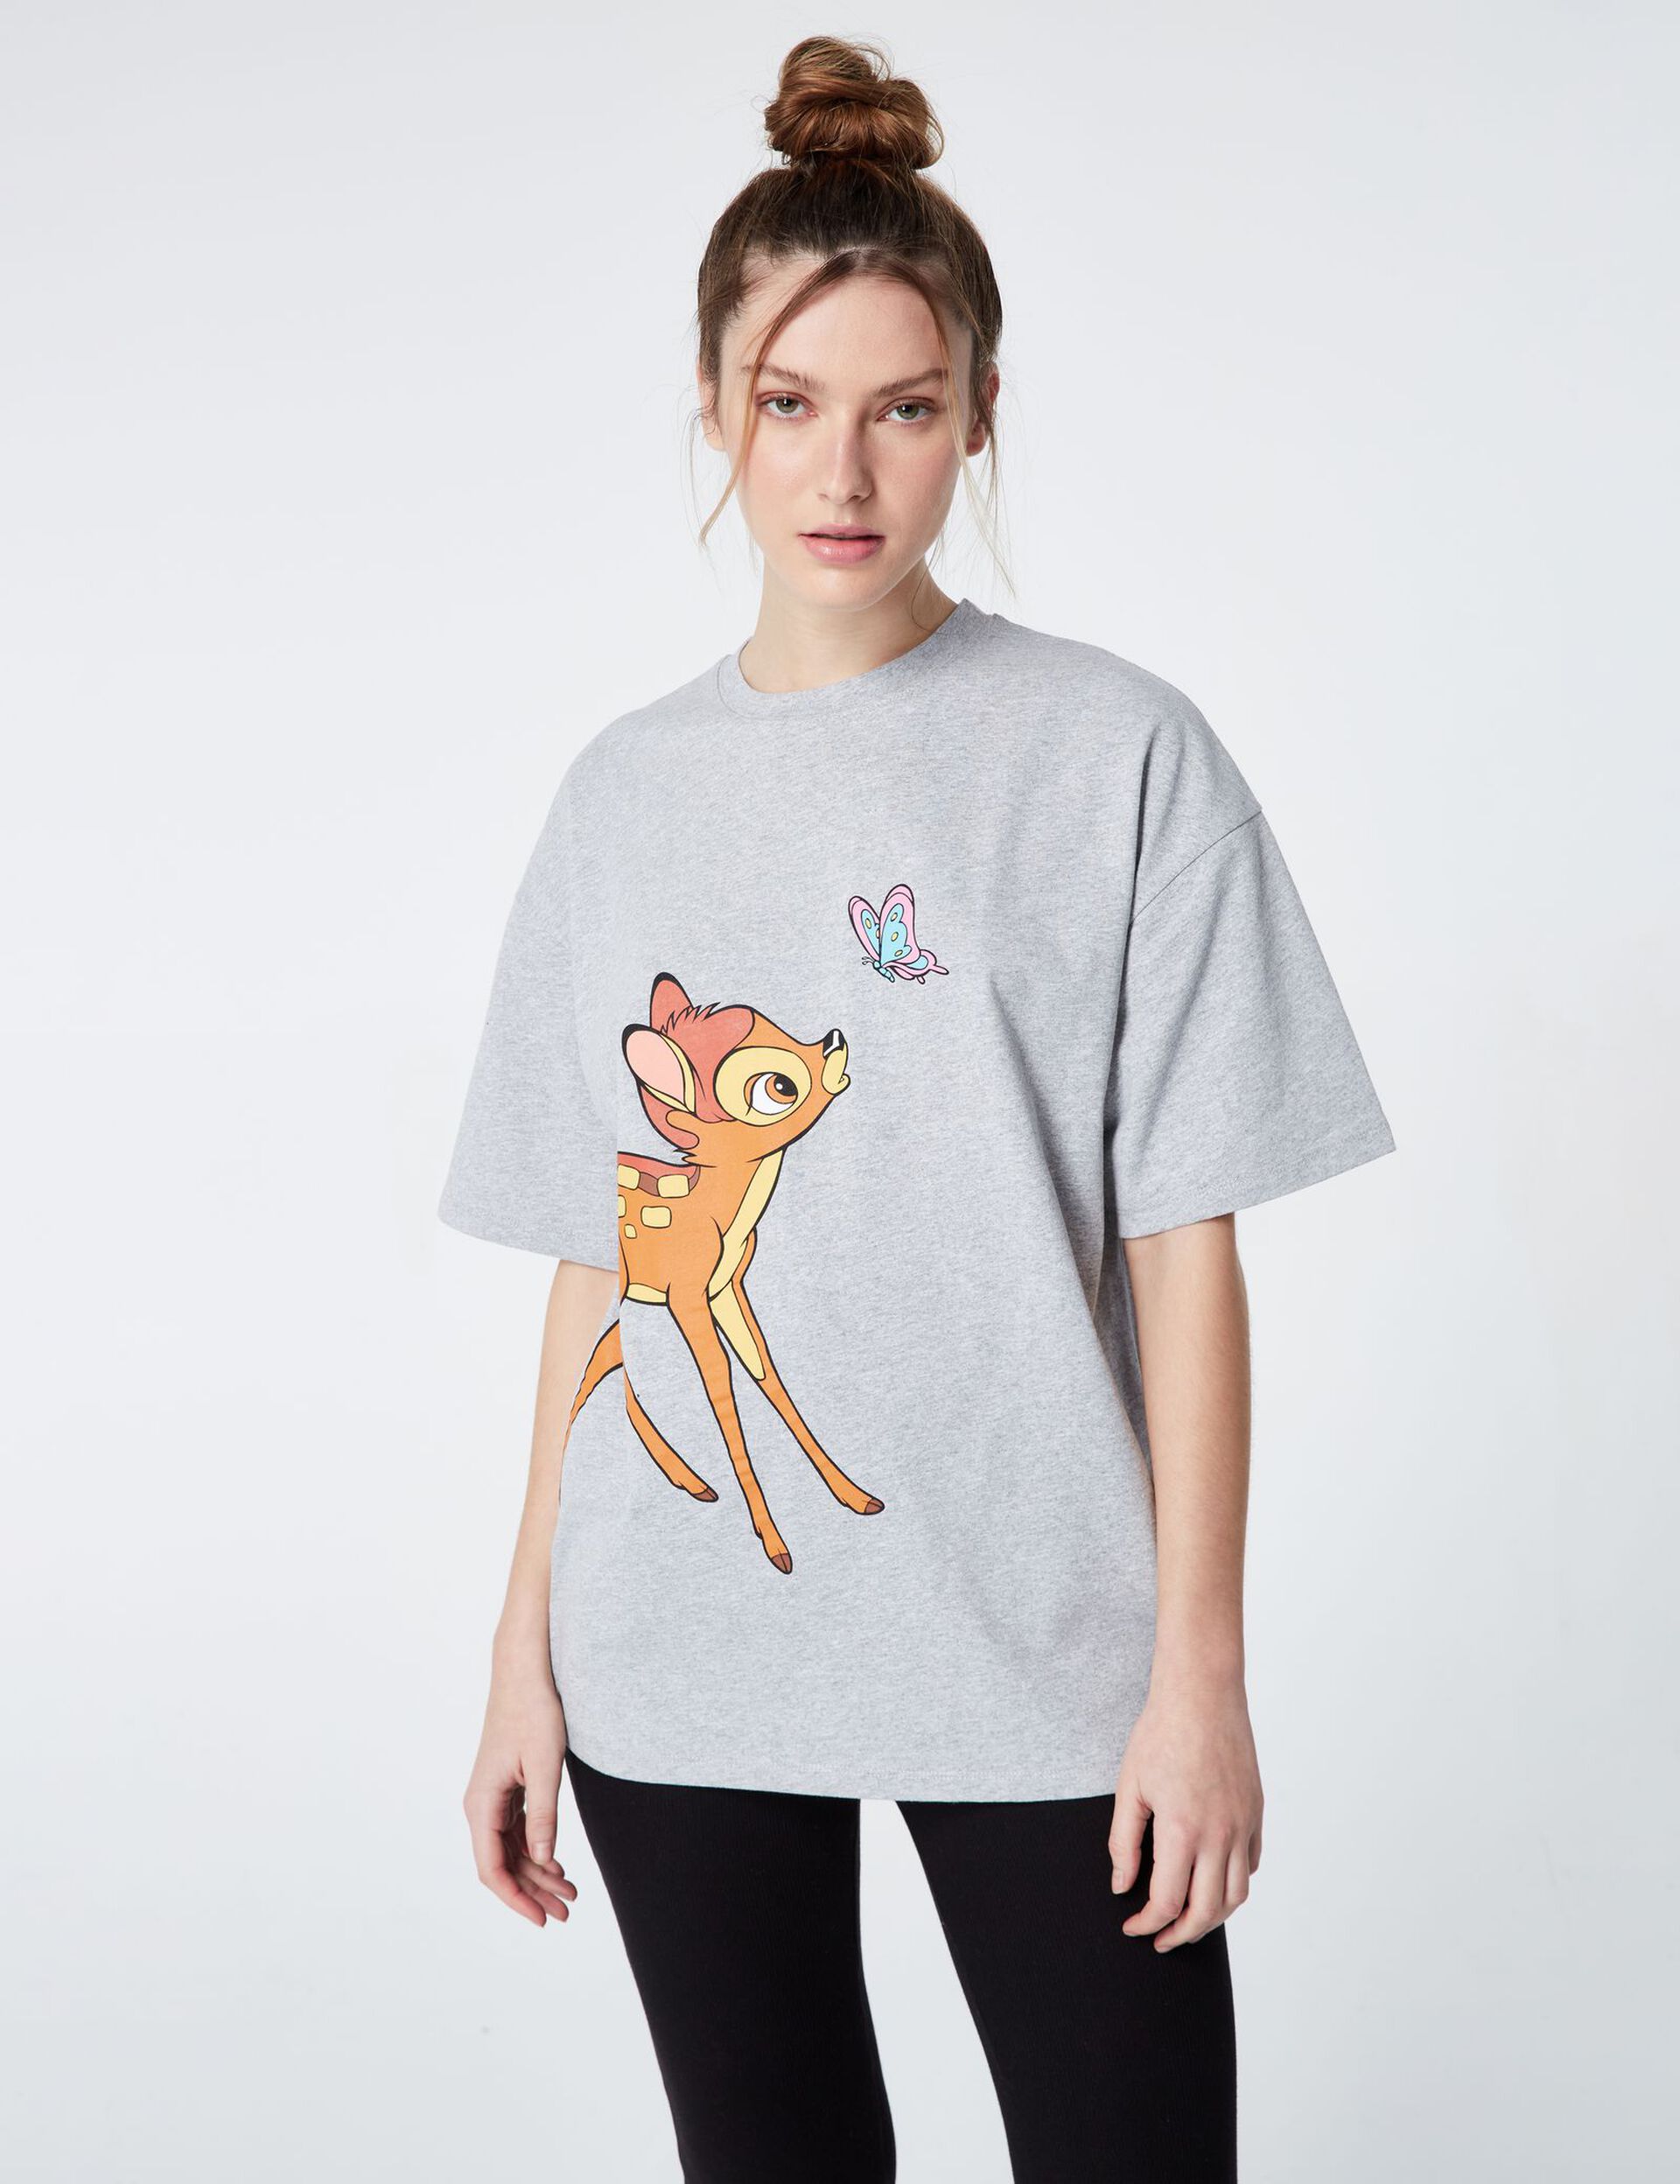 Tee-shirt Disney Bambi